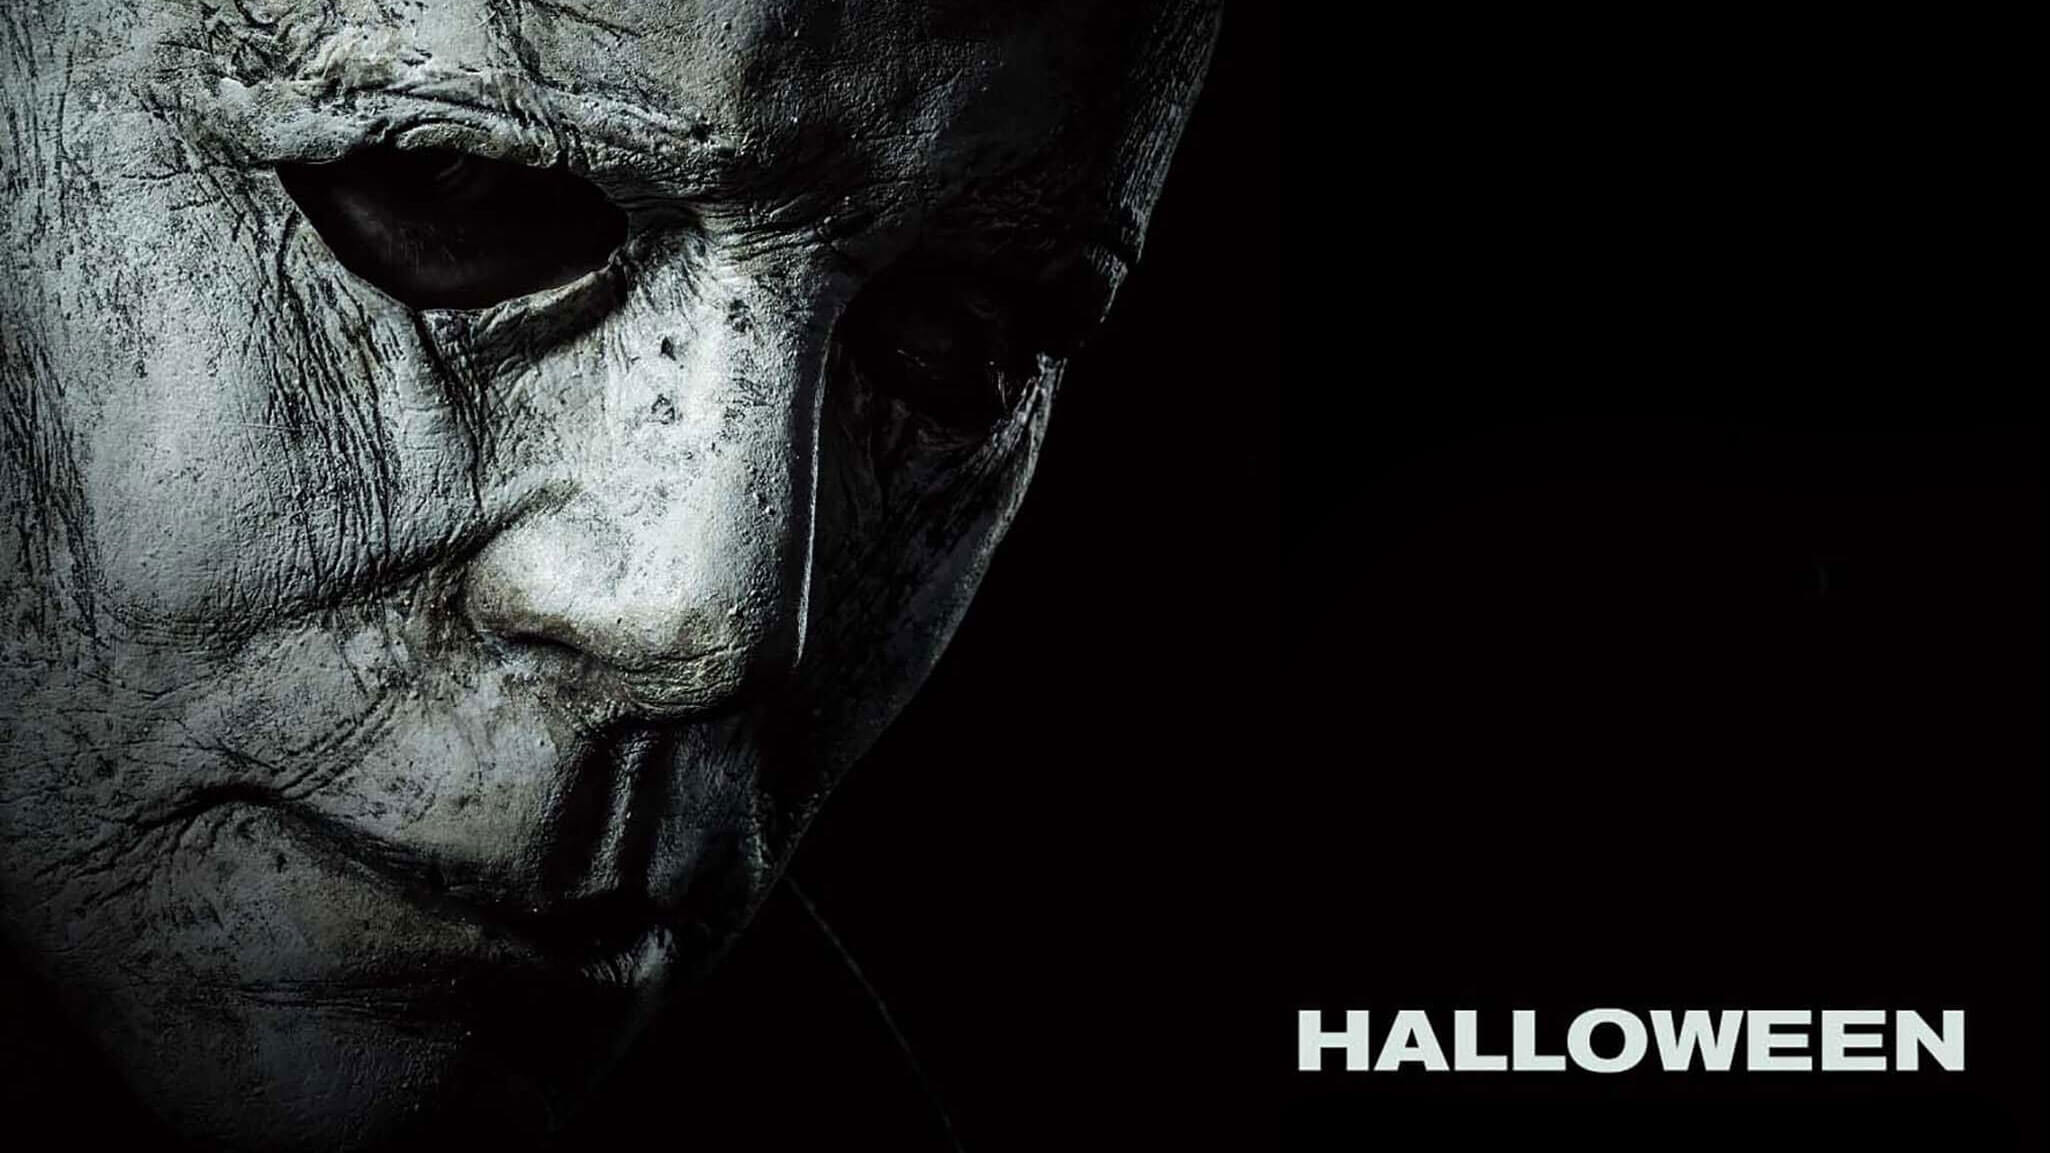 Michael Myers Maske Schmuckt Das Erste Halloween Teaser Poster Scary Movies De